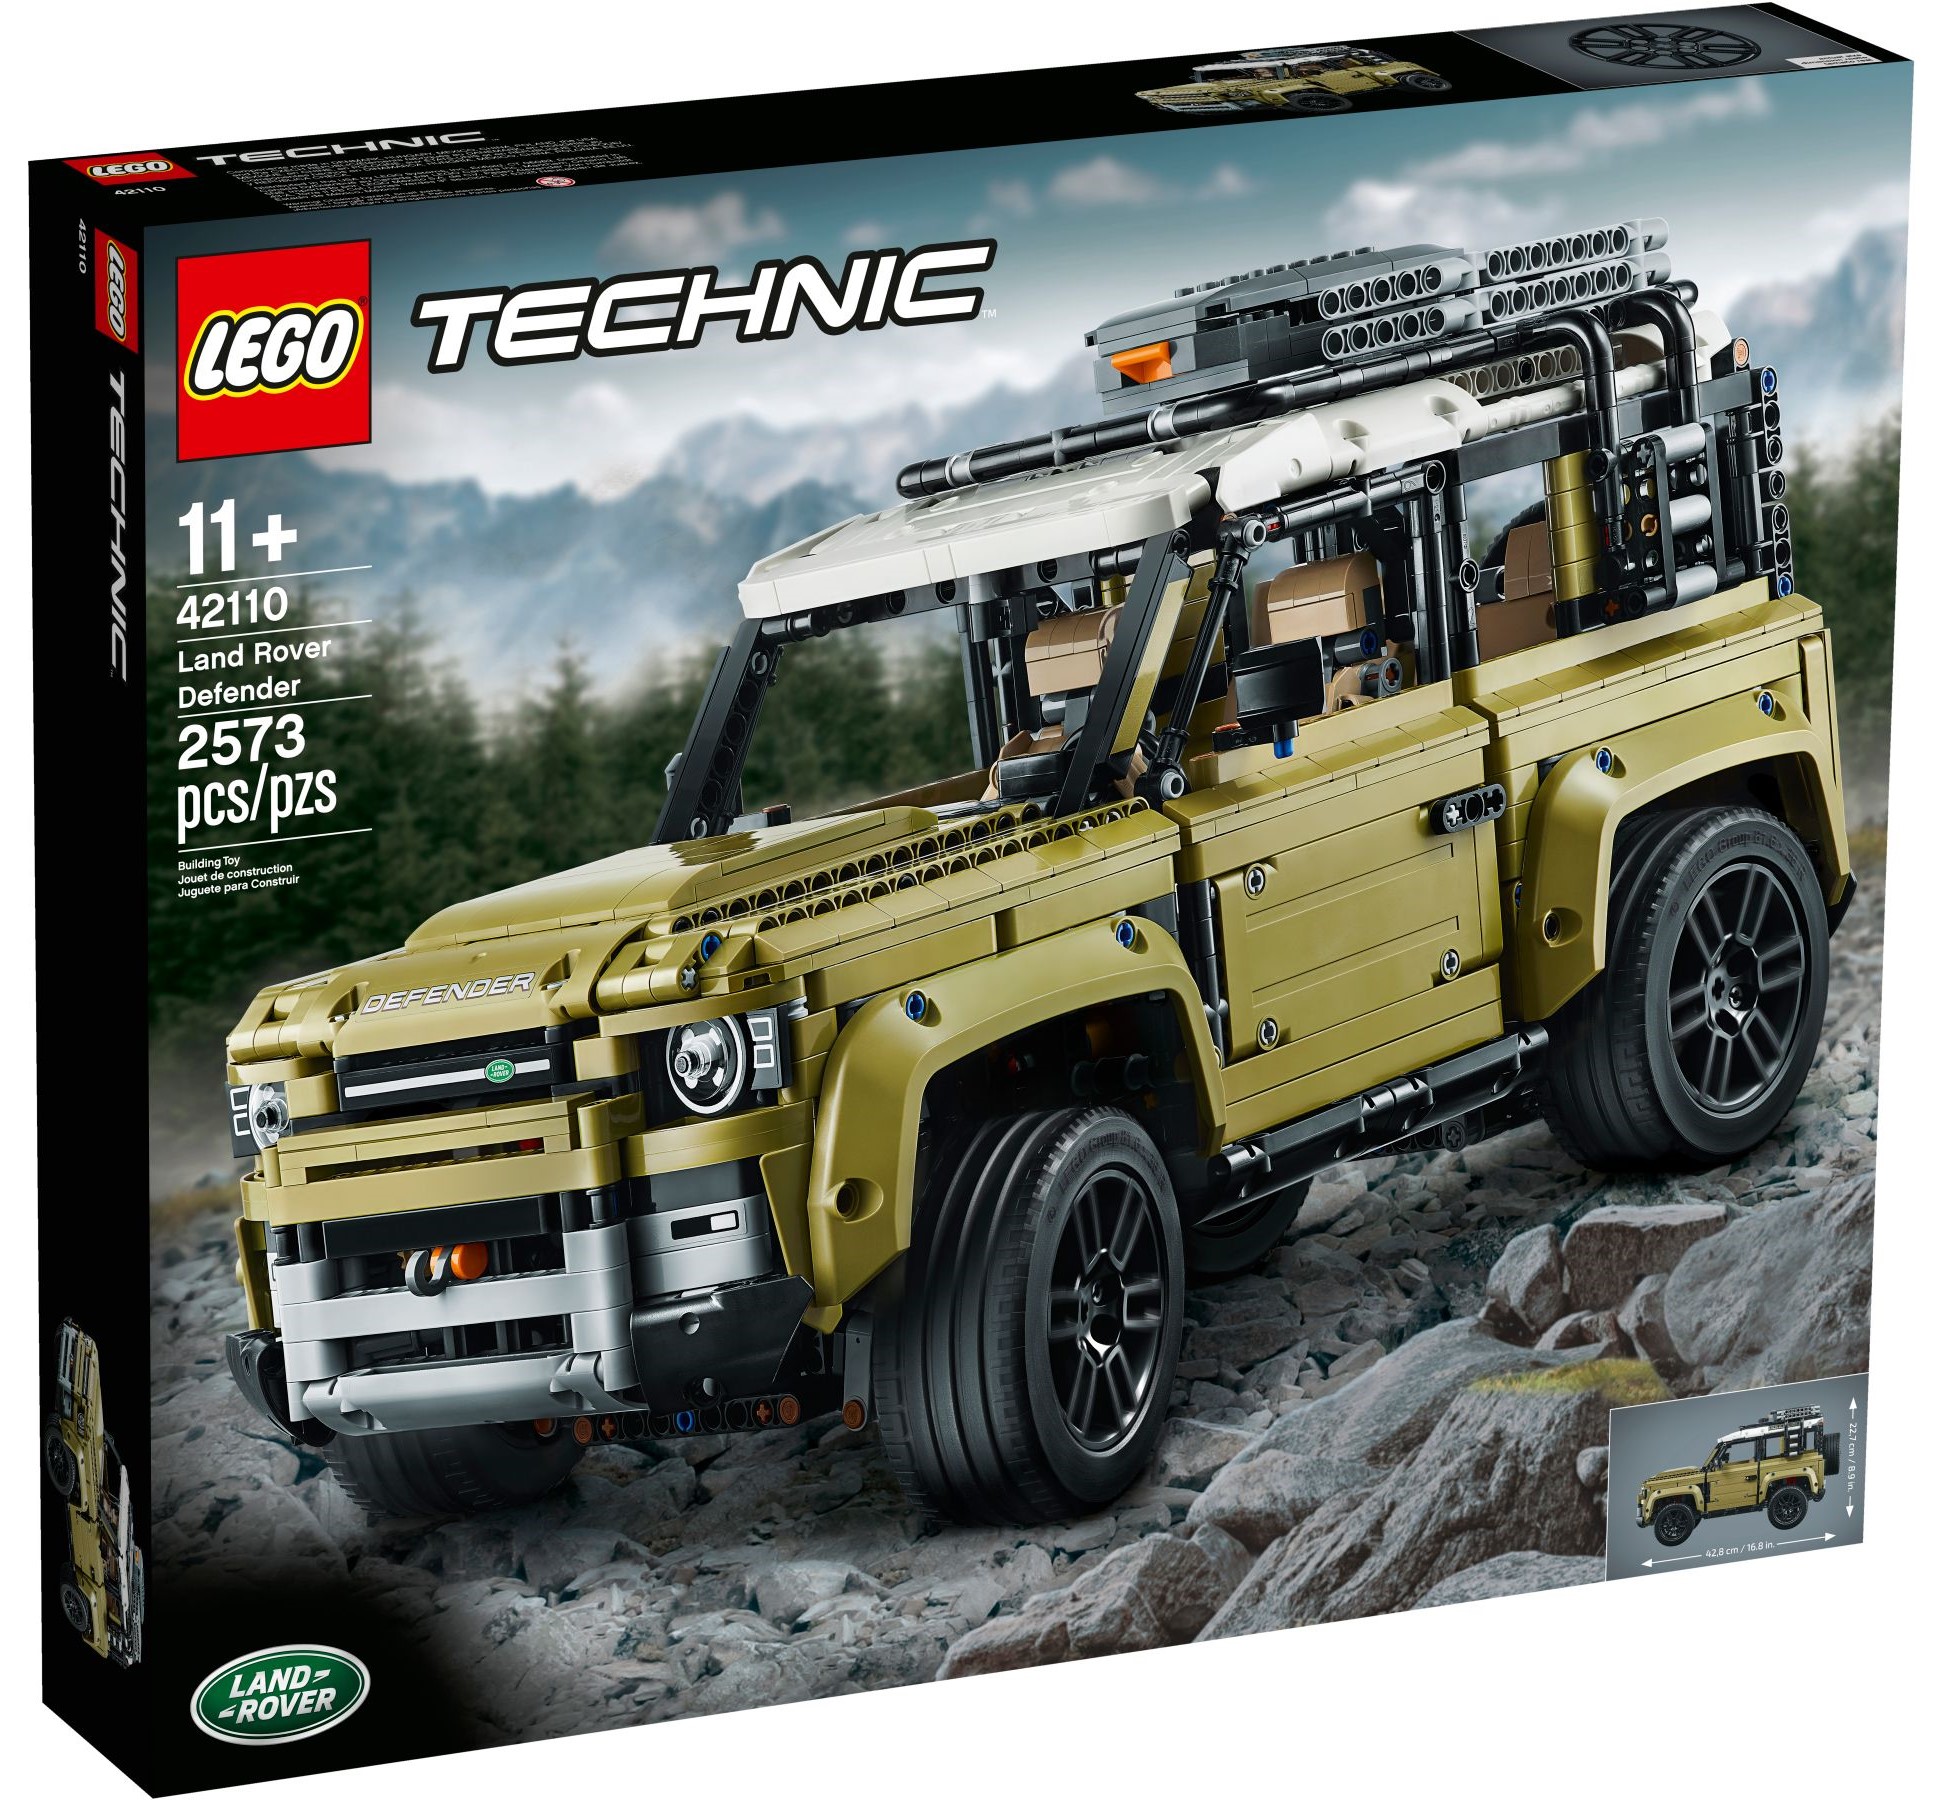 LEGO Icons 10317 Land Rover Defender 90 jetzt im Verkauf